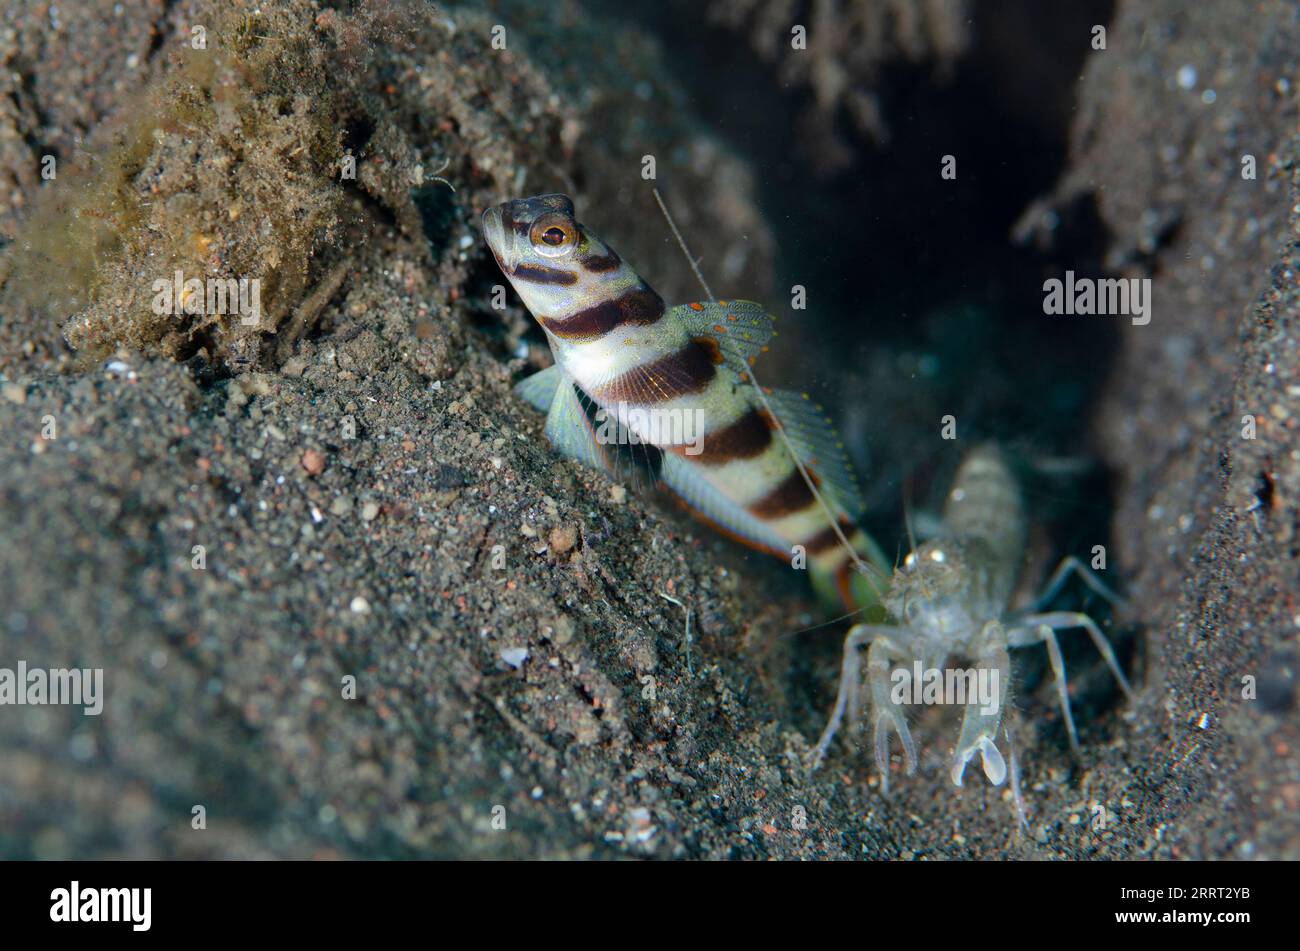 Slantbar Shrimpgoby, Amblyeleotris diagonalis, with Snapping Shrimp, Alpheus sp, Bulakan Slope dive site, Seraya, Karangasem, Bali, Indonesia Stock Photo